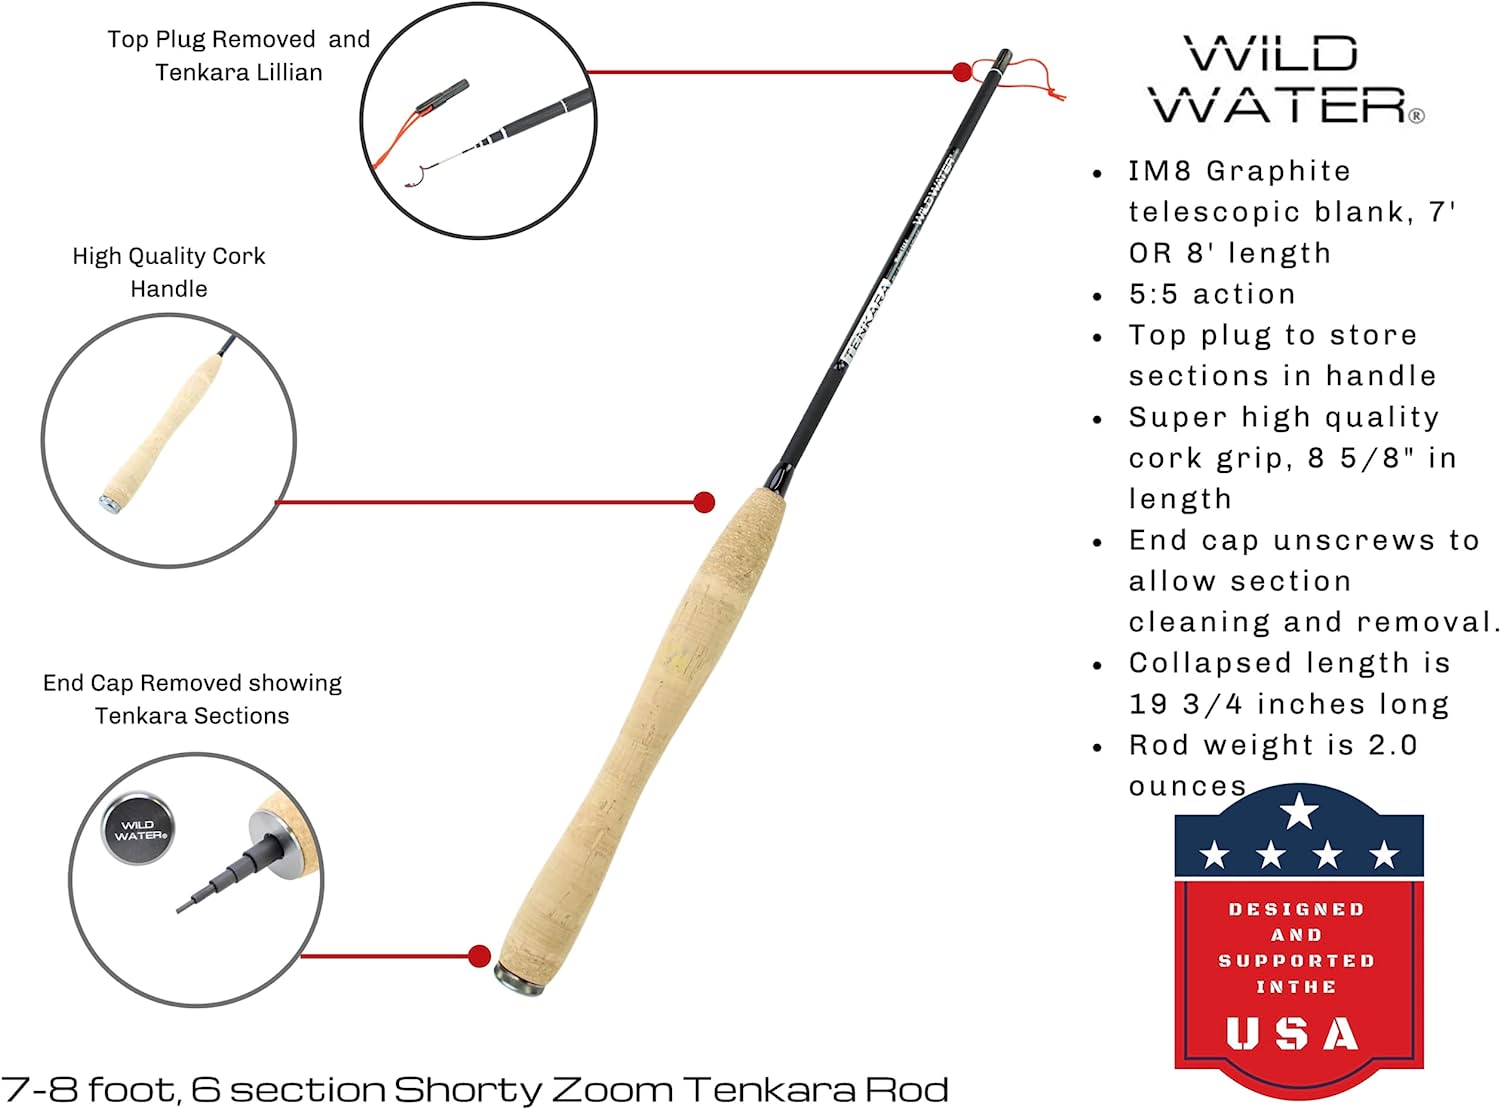 Wild Water Tenkara Zoom Fly Fishing Kit 7-8 ft Shorty Rod